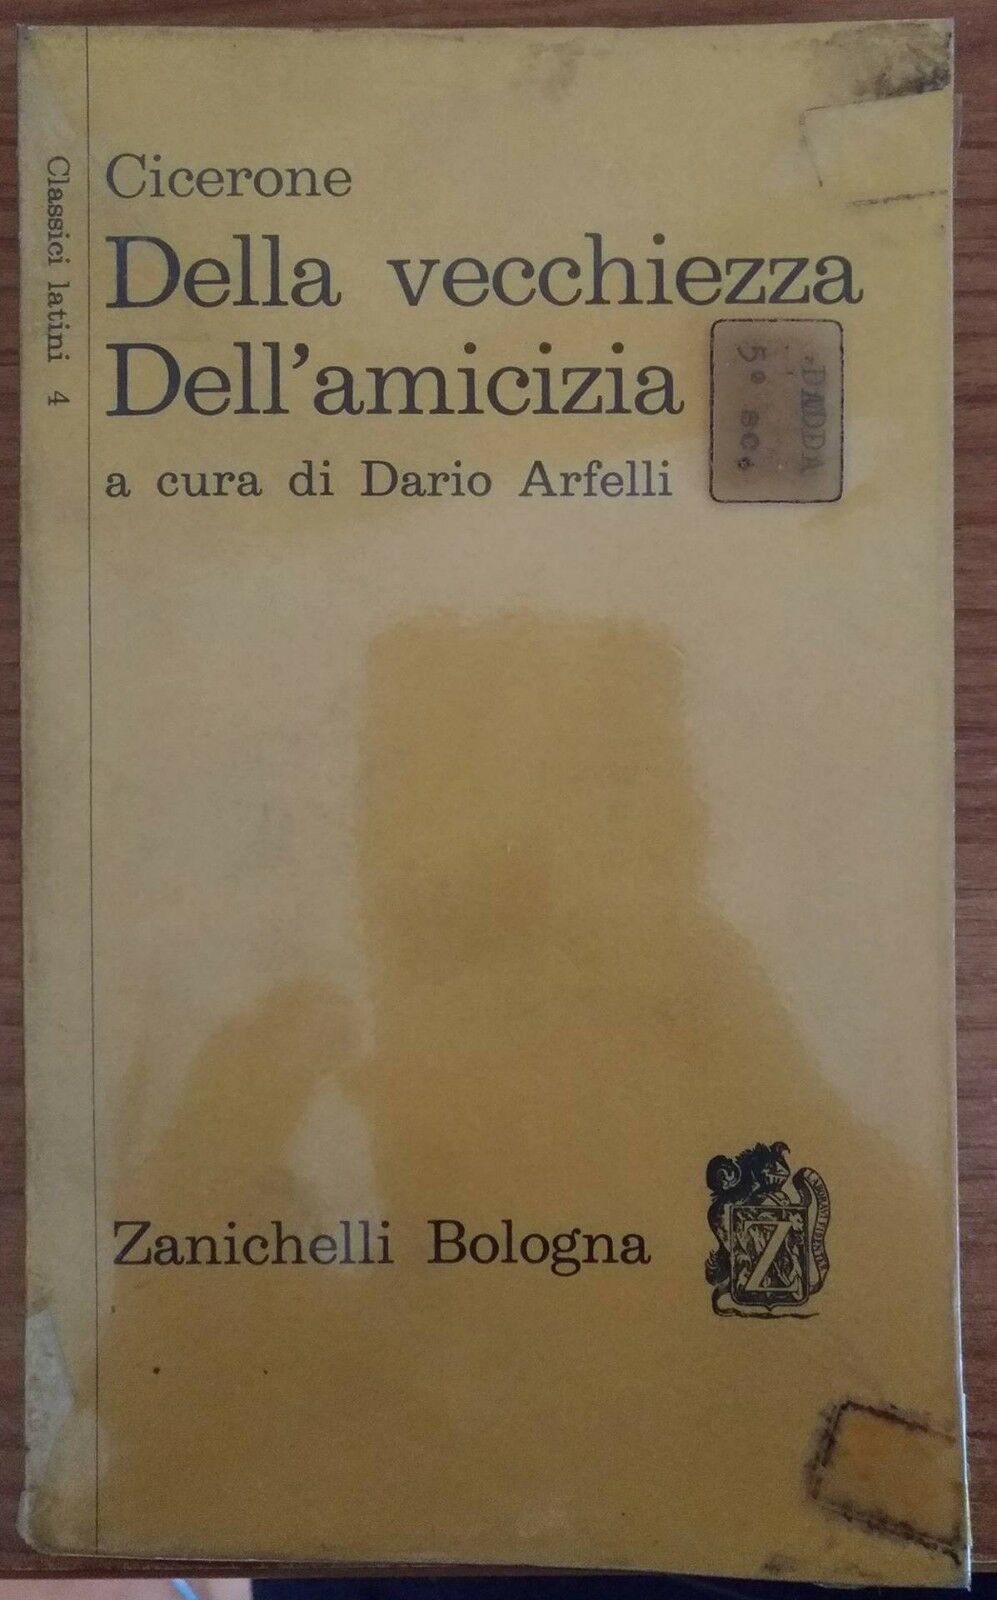 Cicerone-Della vecchiezza Dell'amicizia,Dario Arfelli,1966,Zanichelli -S